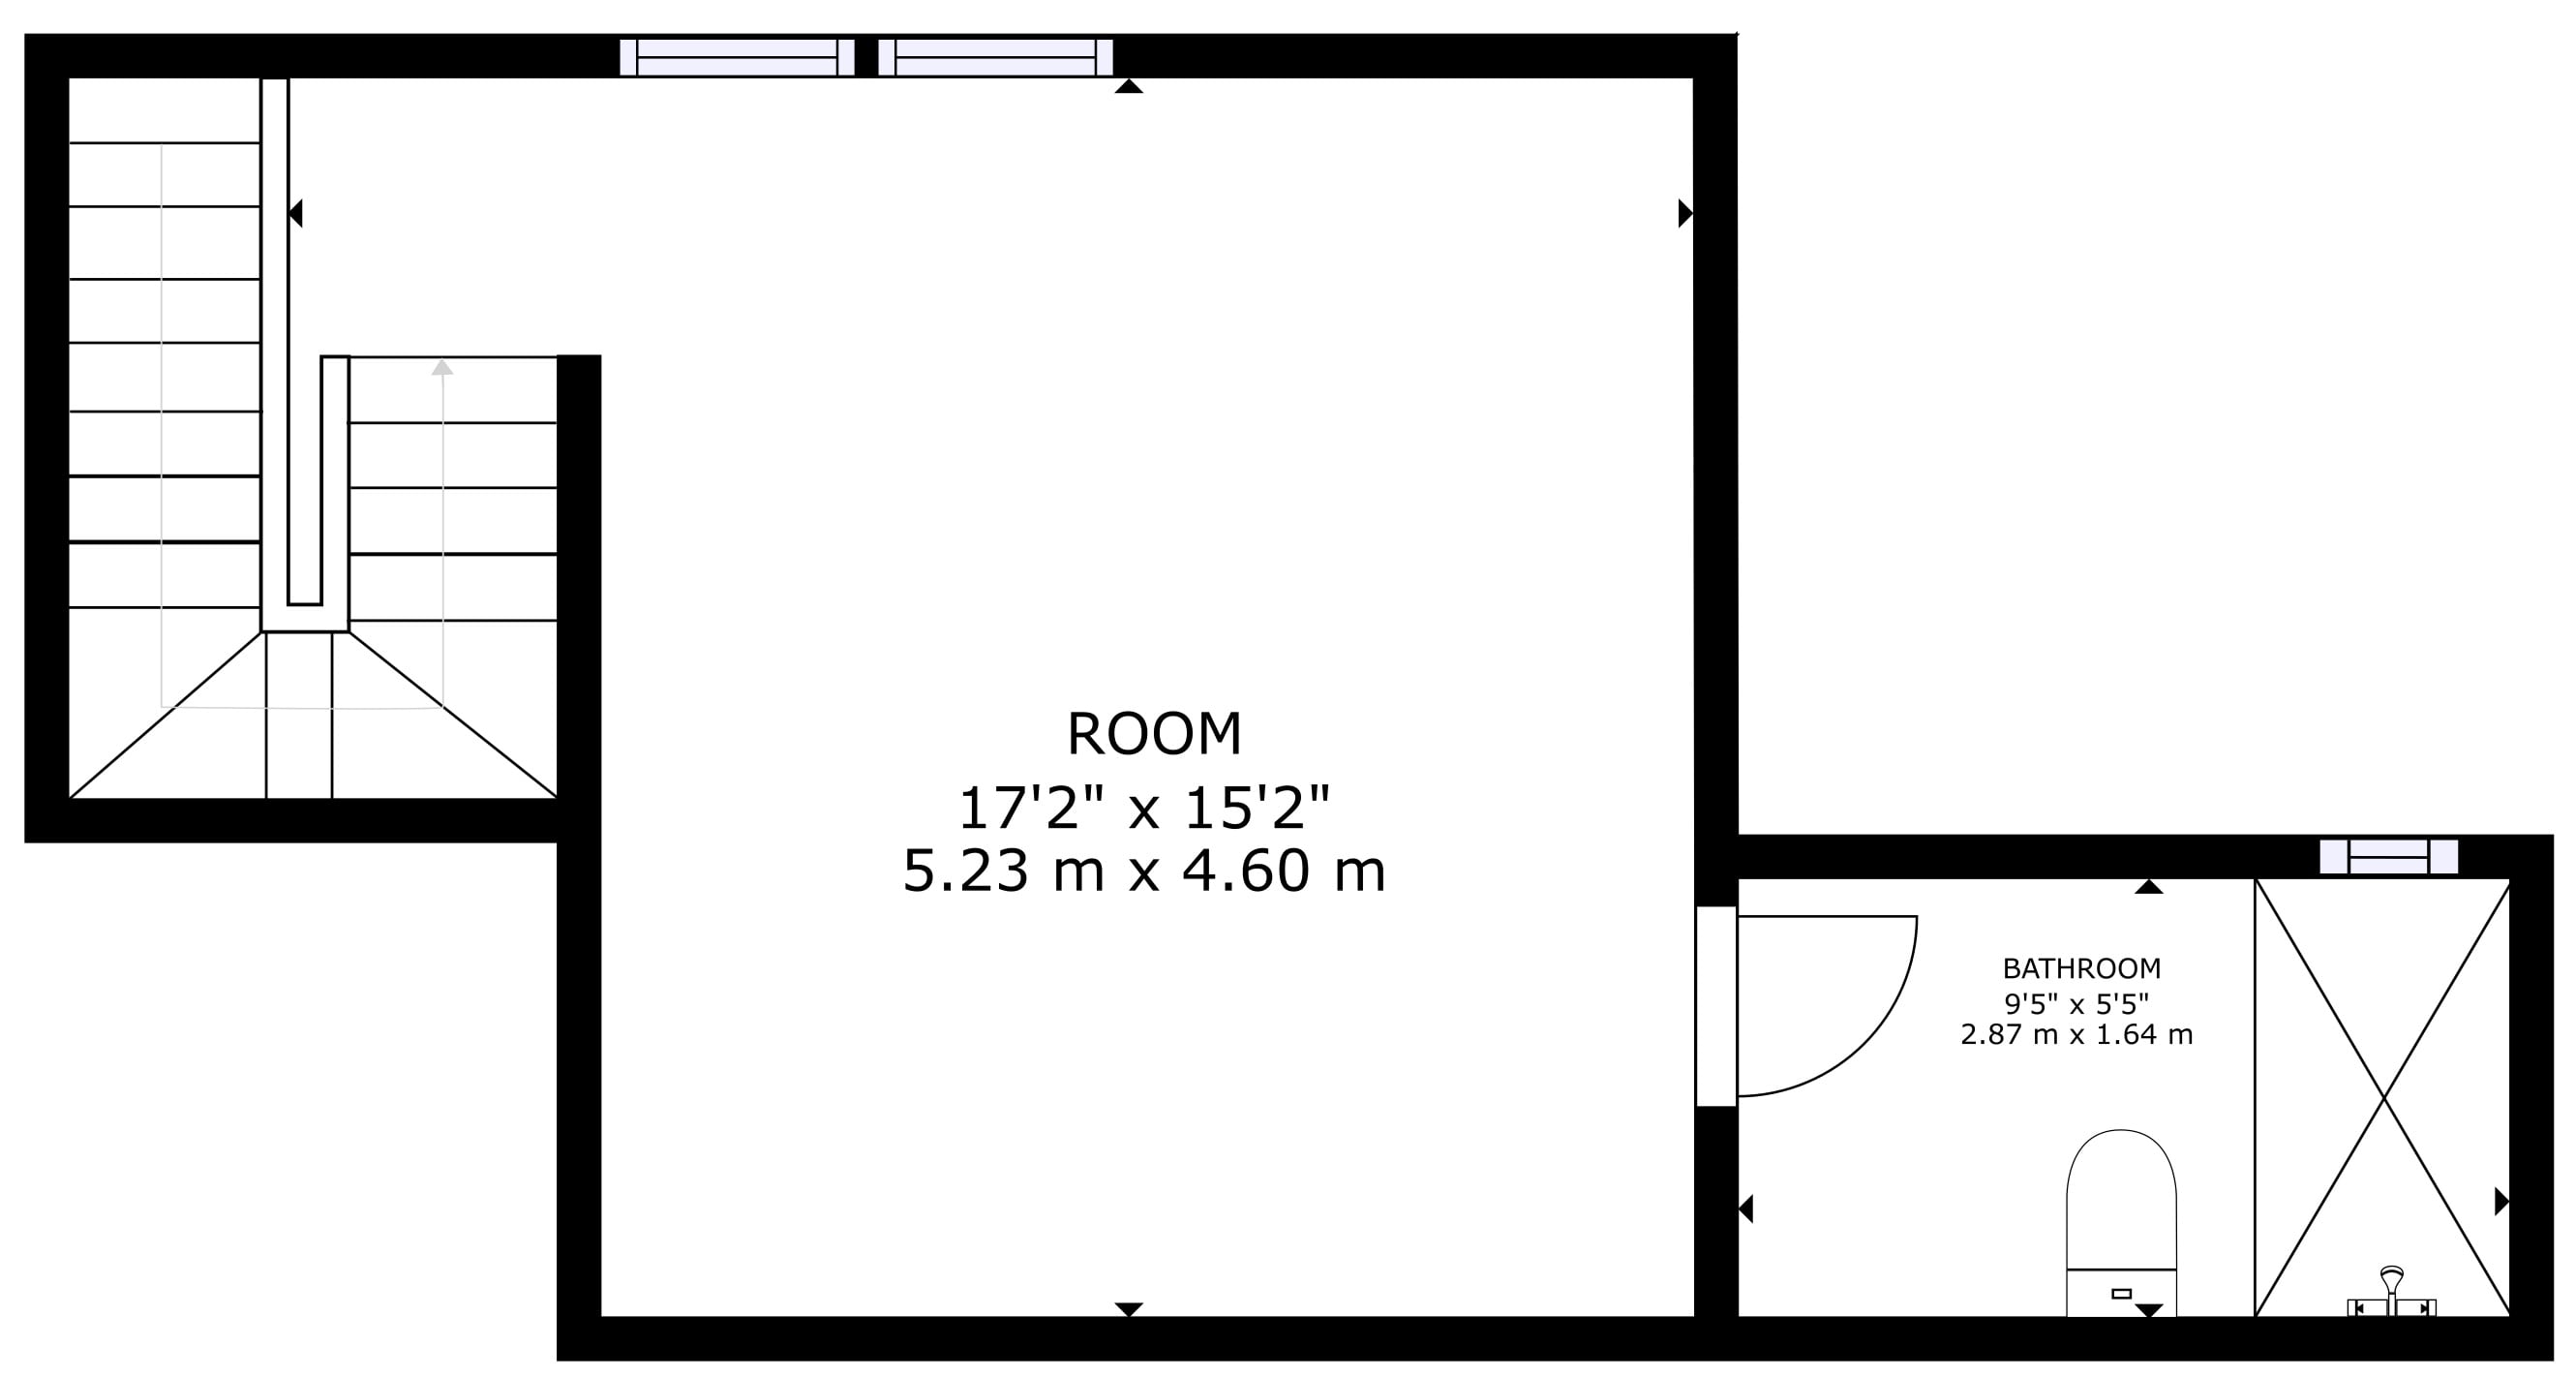 Gaivotas Golden Duplexfloor-plans-1